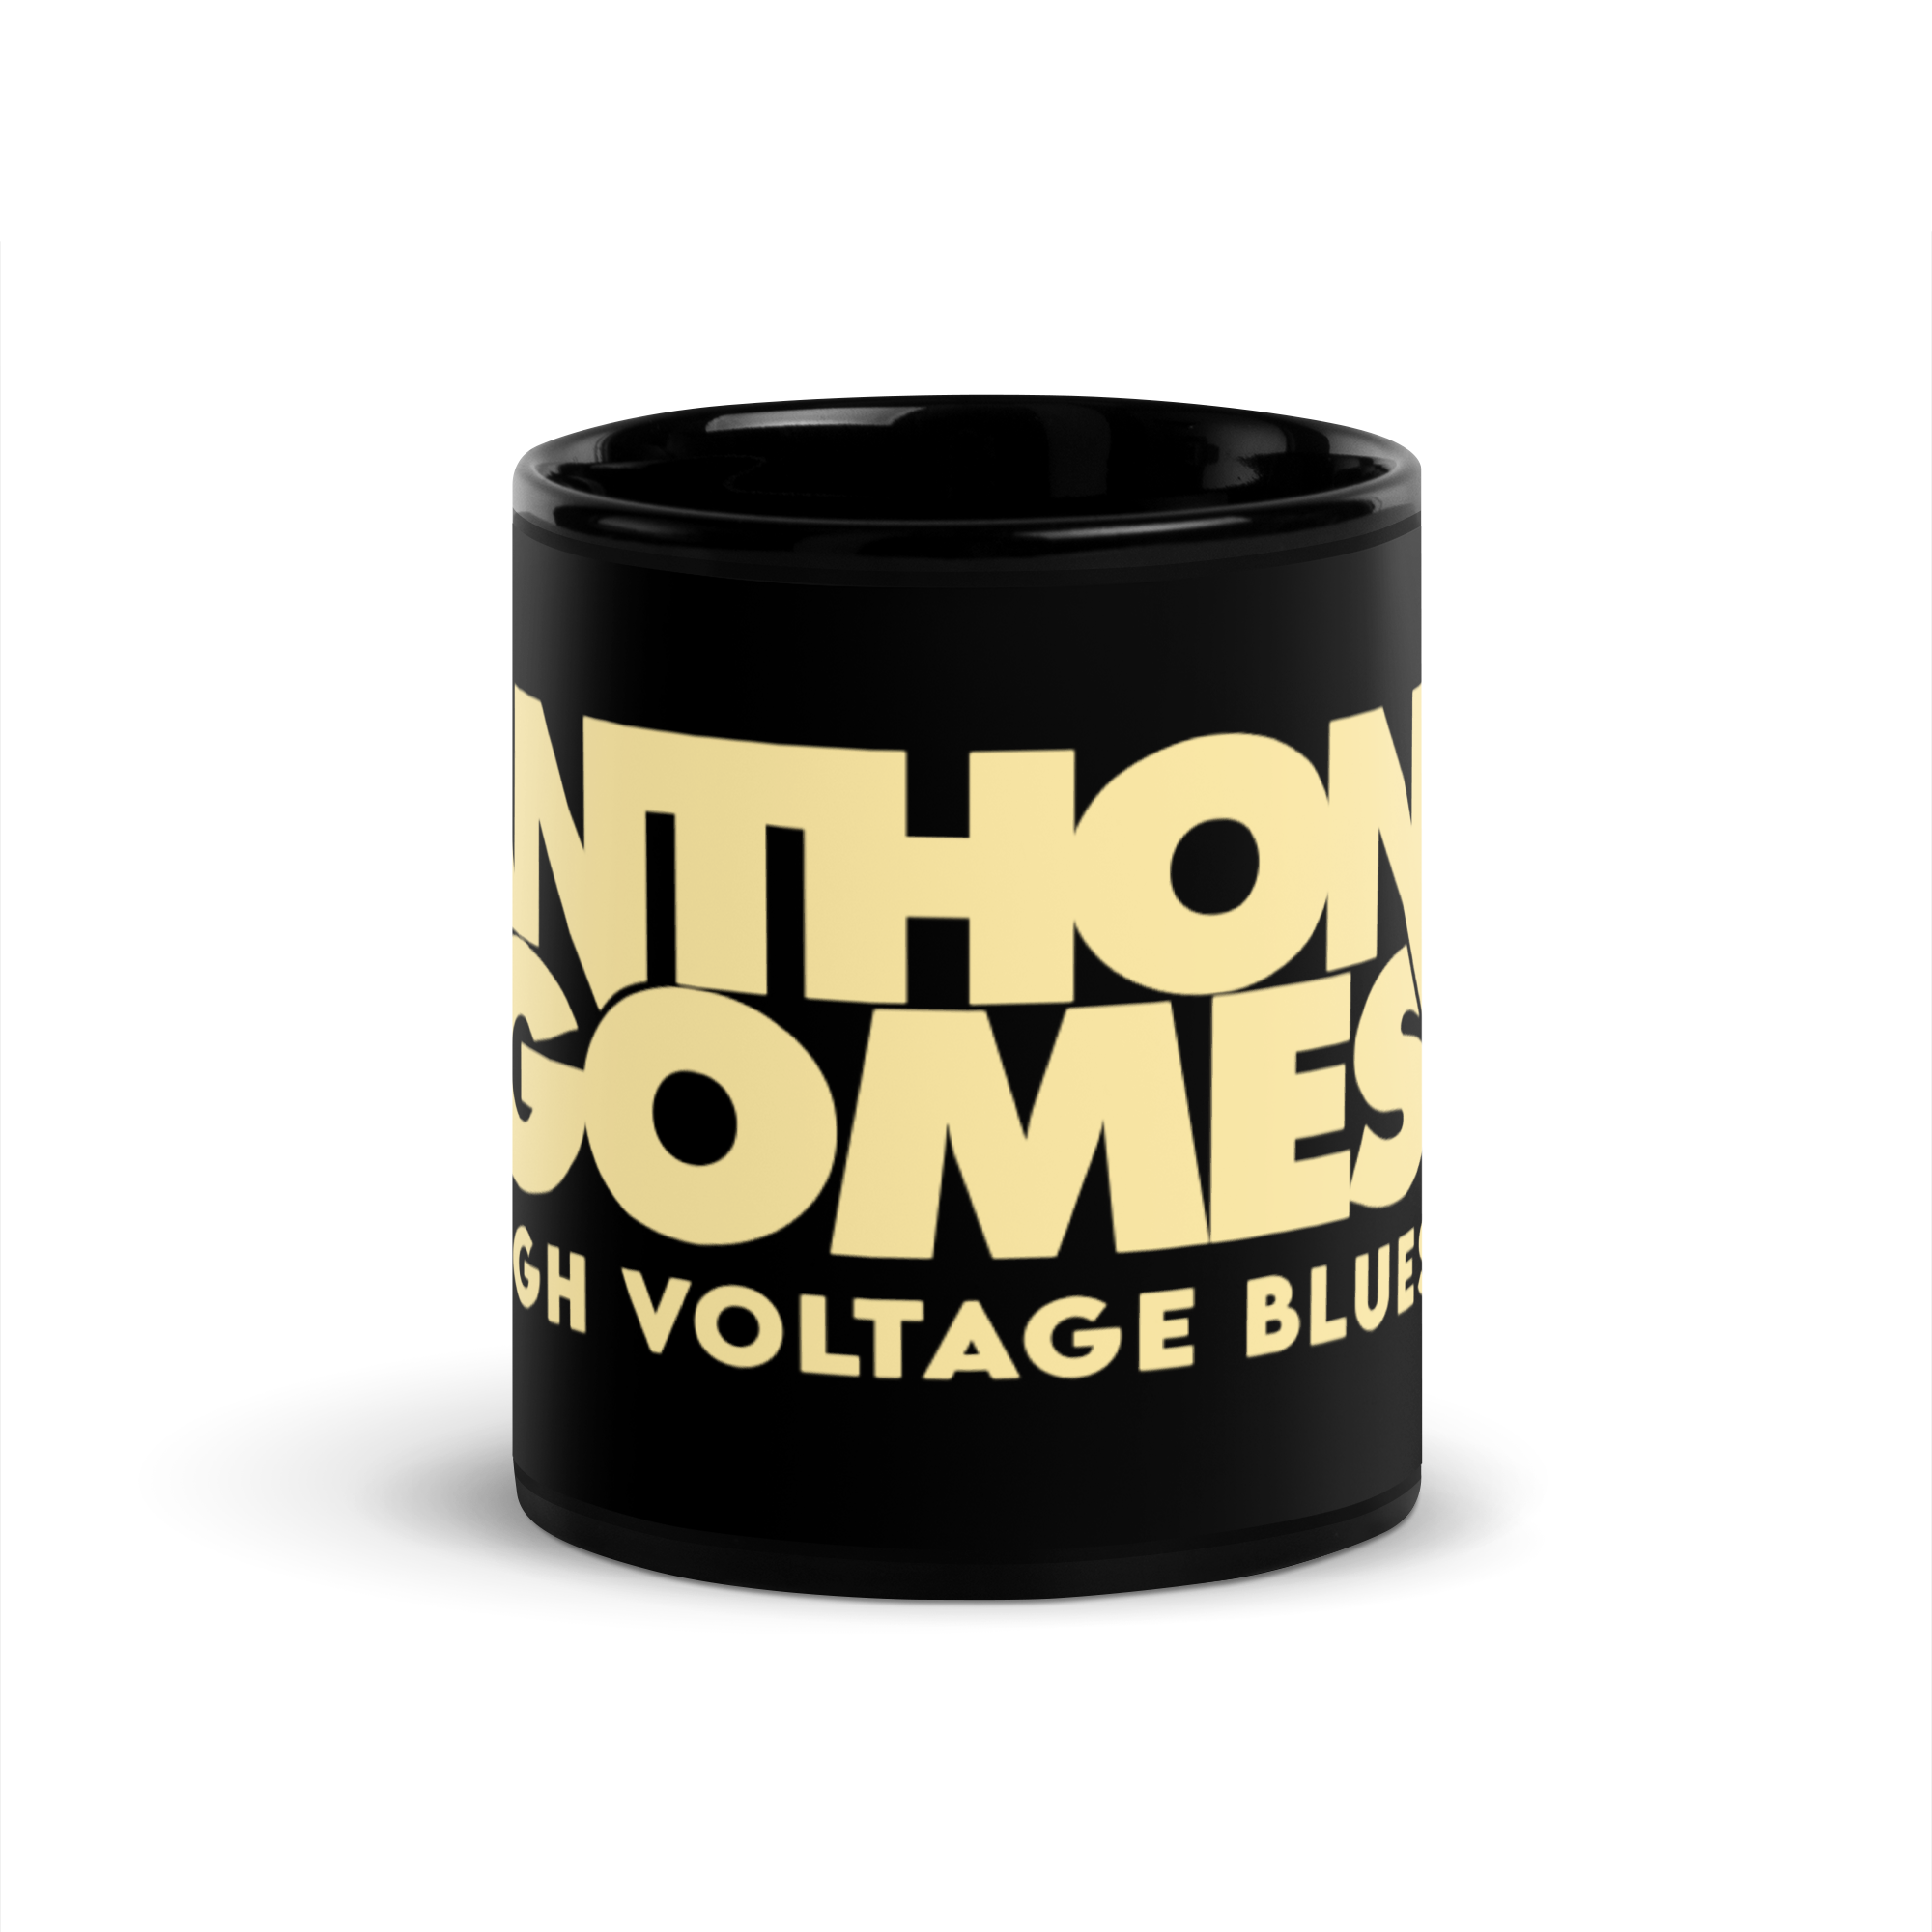 AG HVB Logo Black Glossy Mug